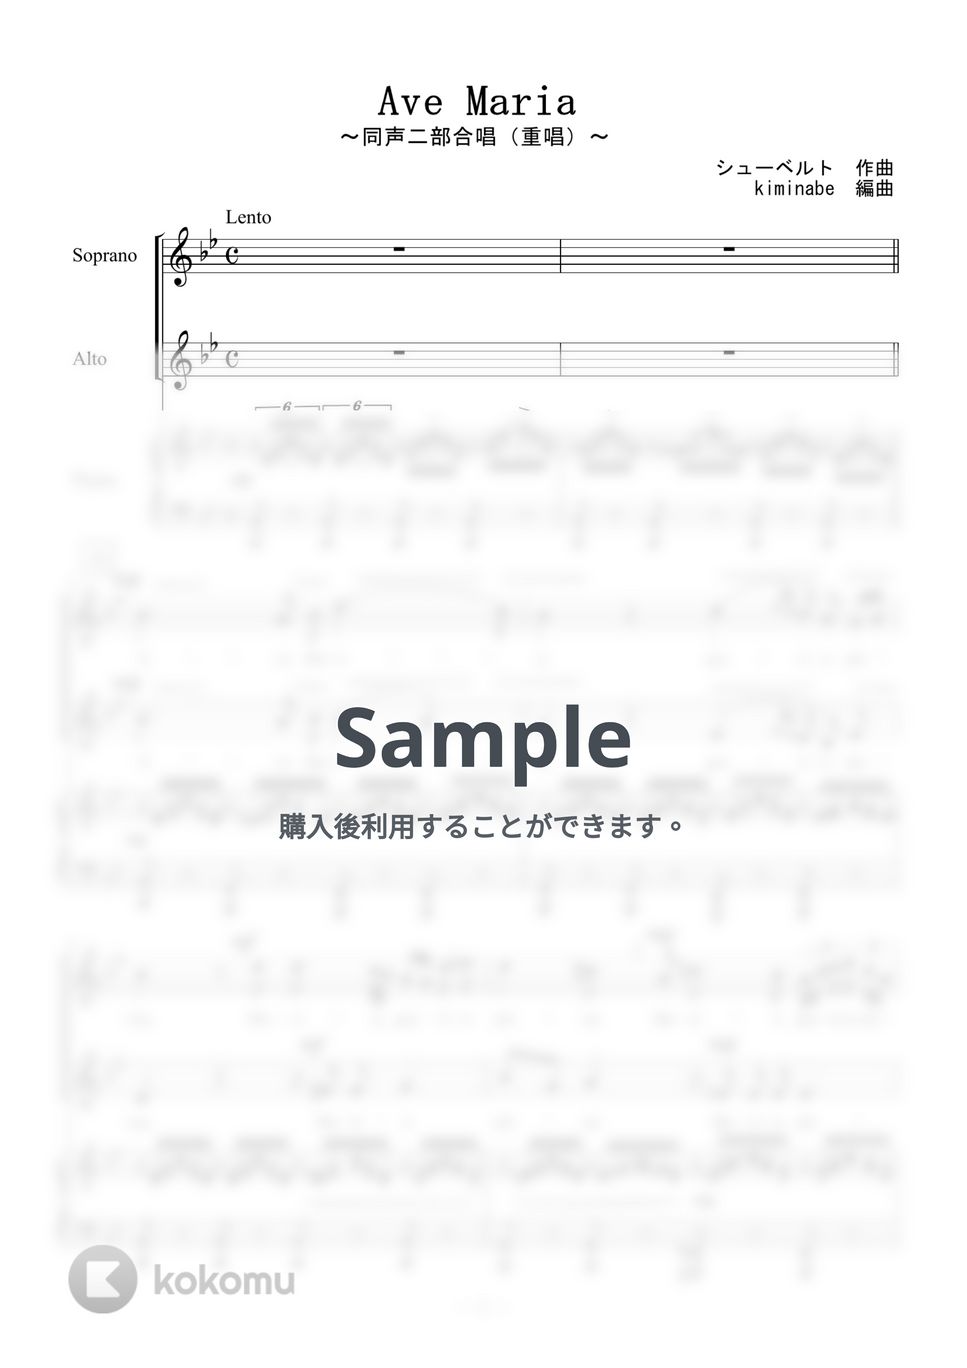 シューベルト - Ave Maria (同声二部合唱／重唱) by kiminabe